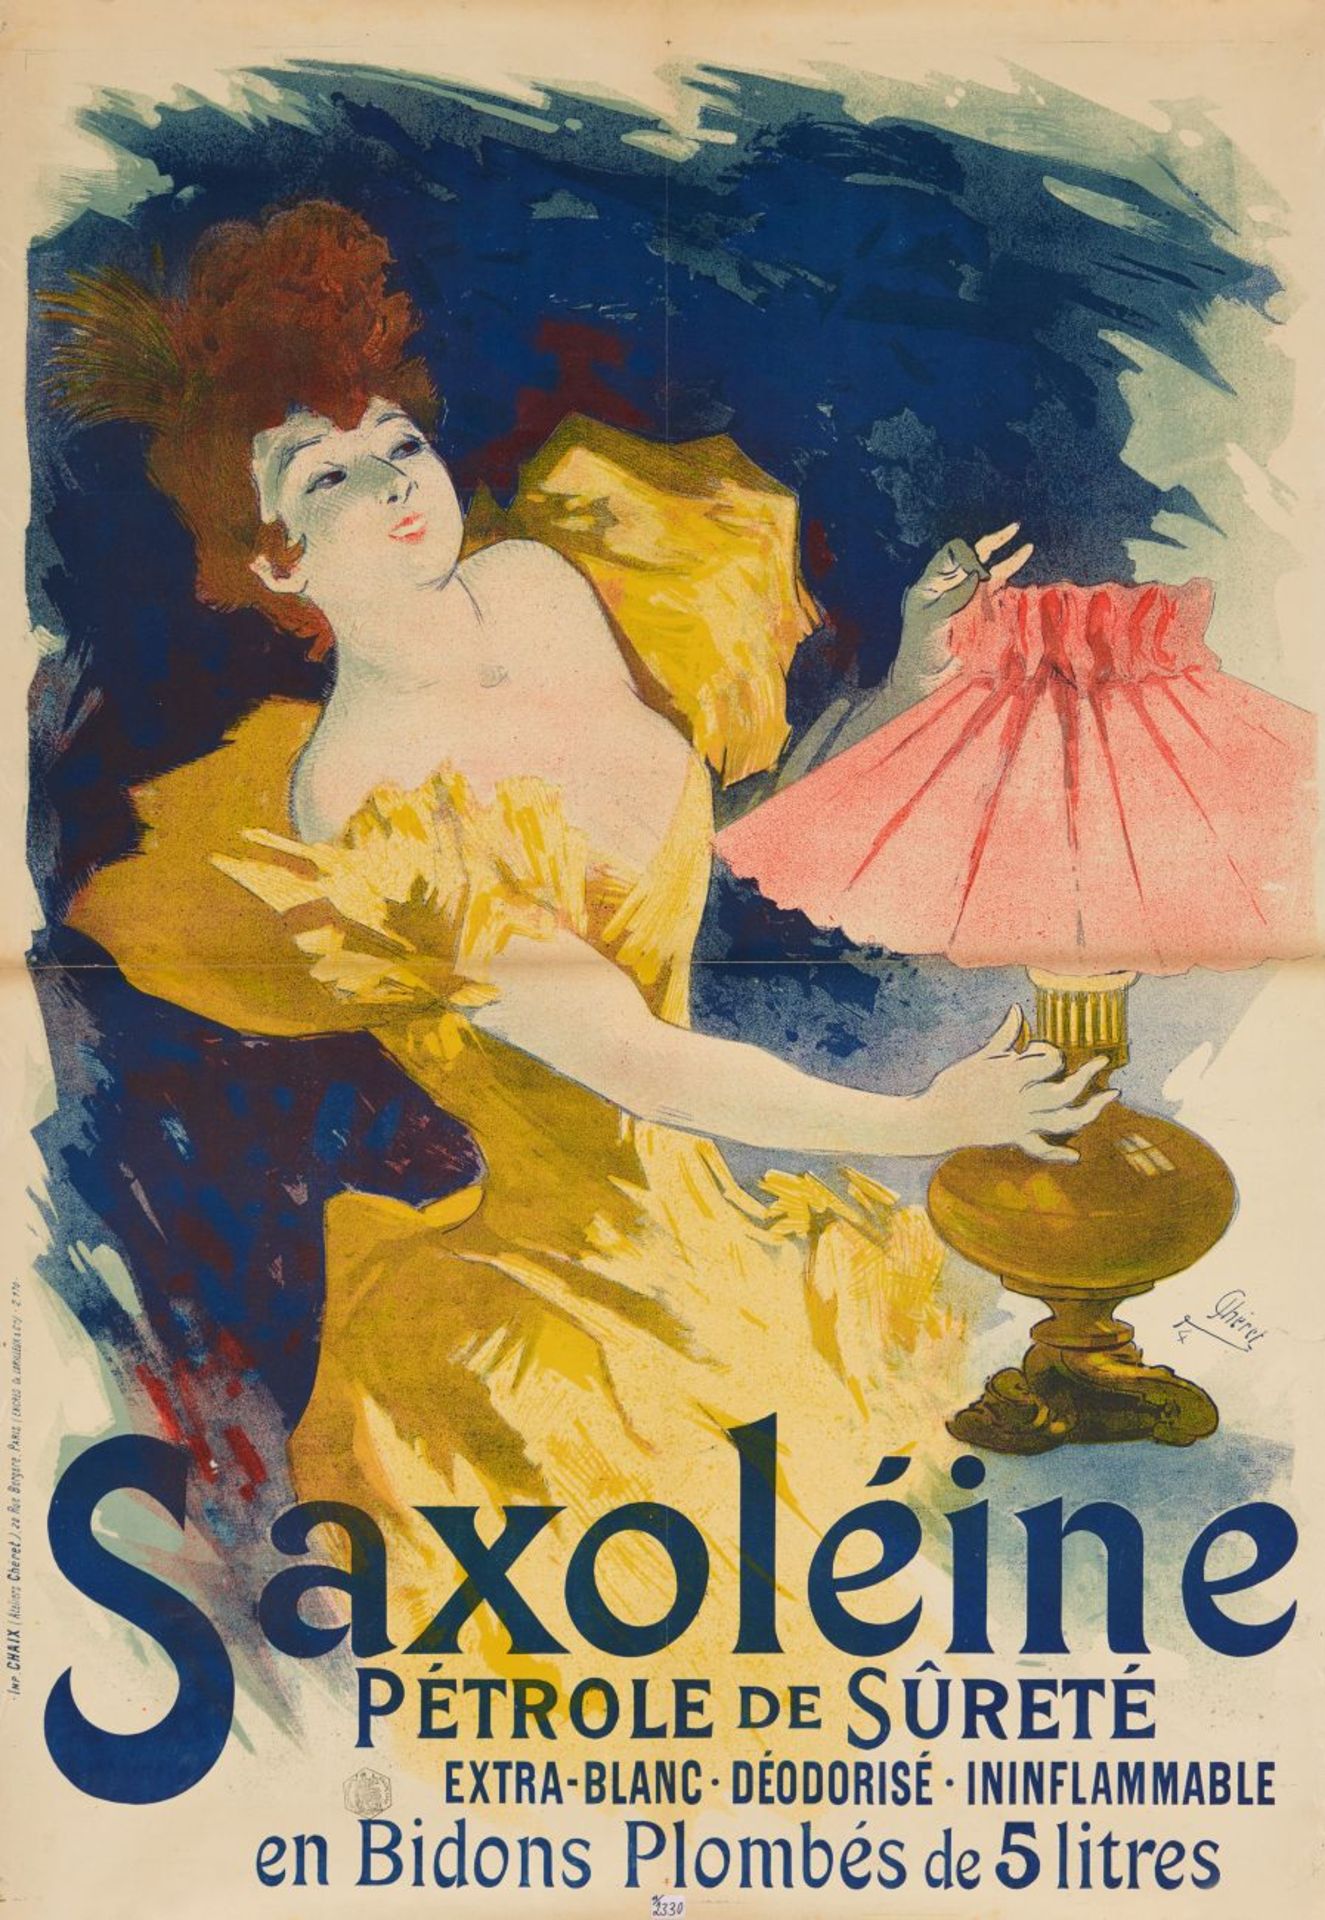 J. Chéret. Saxoleine. Petrole de Surete. Farblithographie. 1894. Plakat.